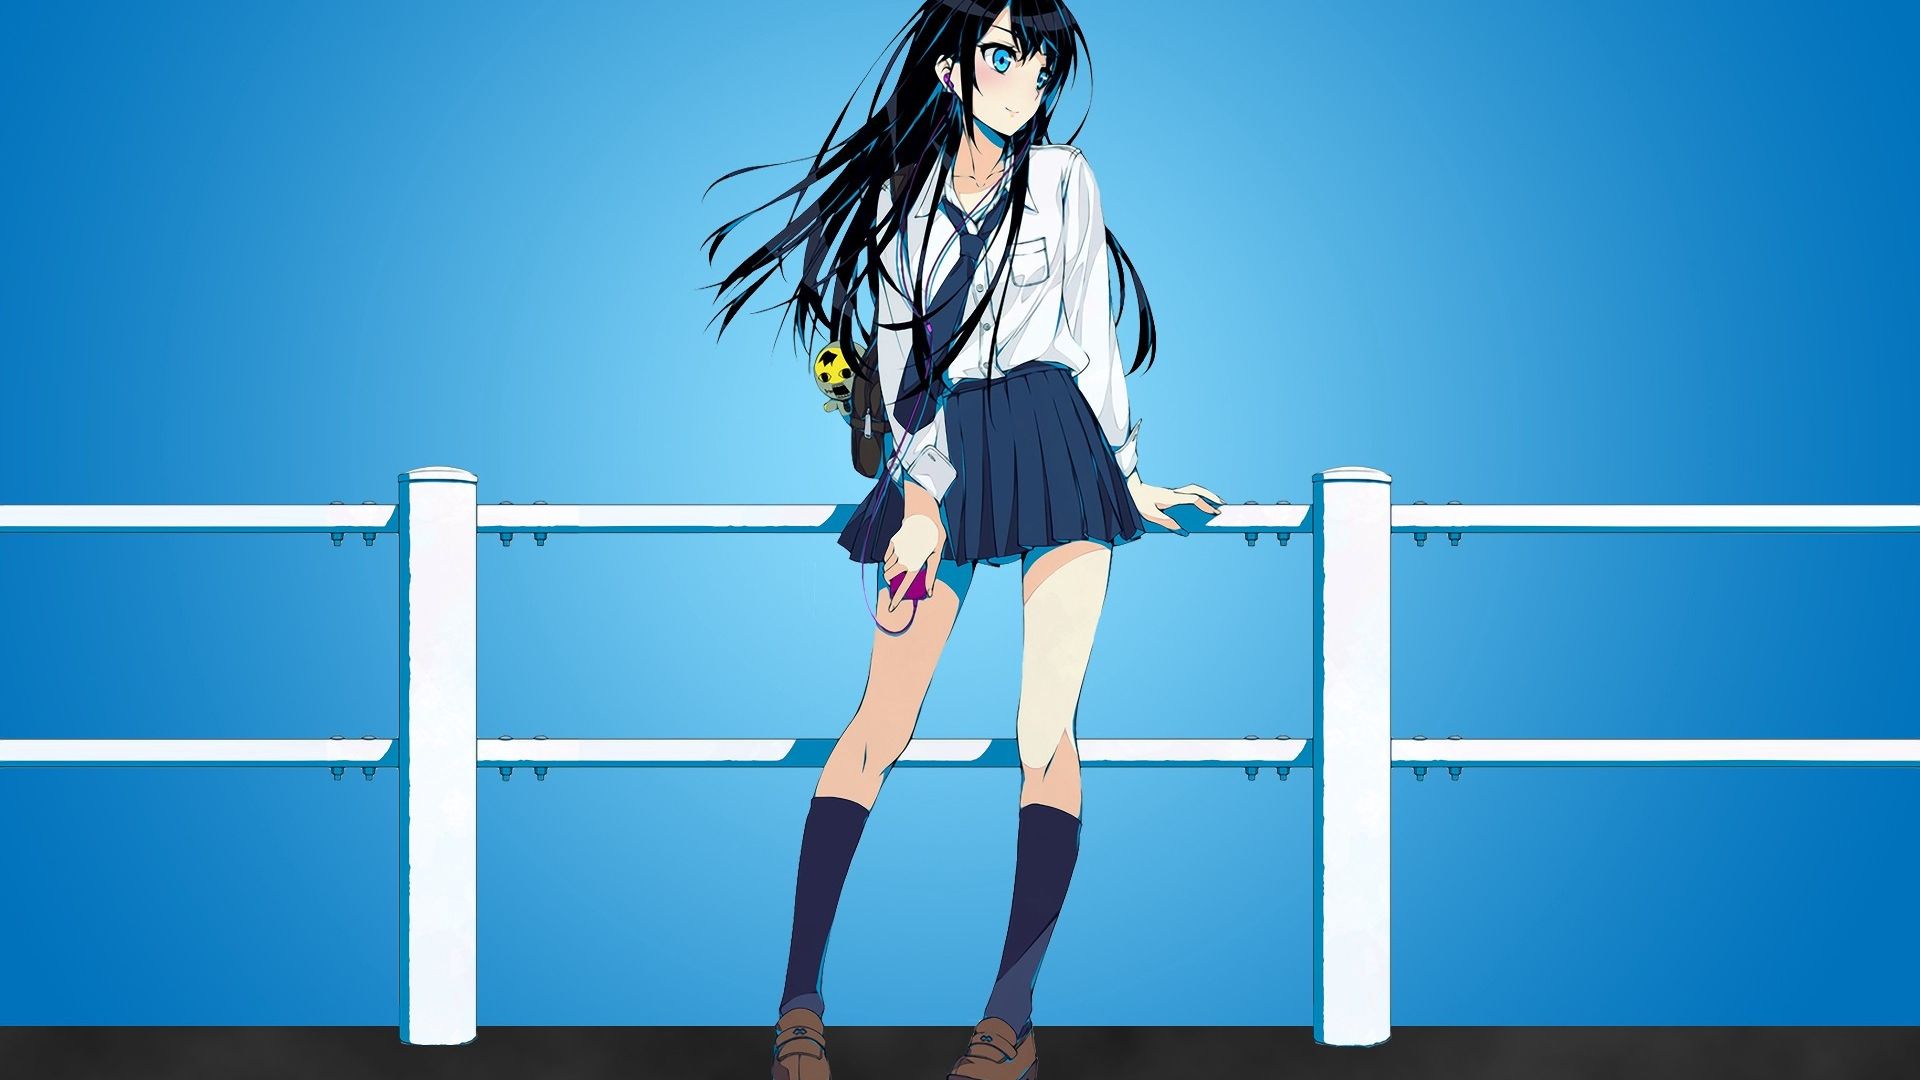 Wallpaper Black long hair anime girl